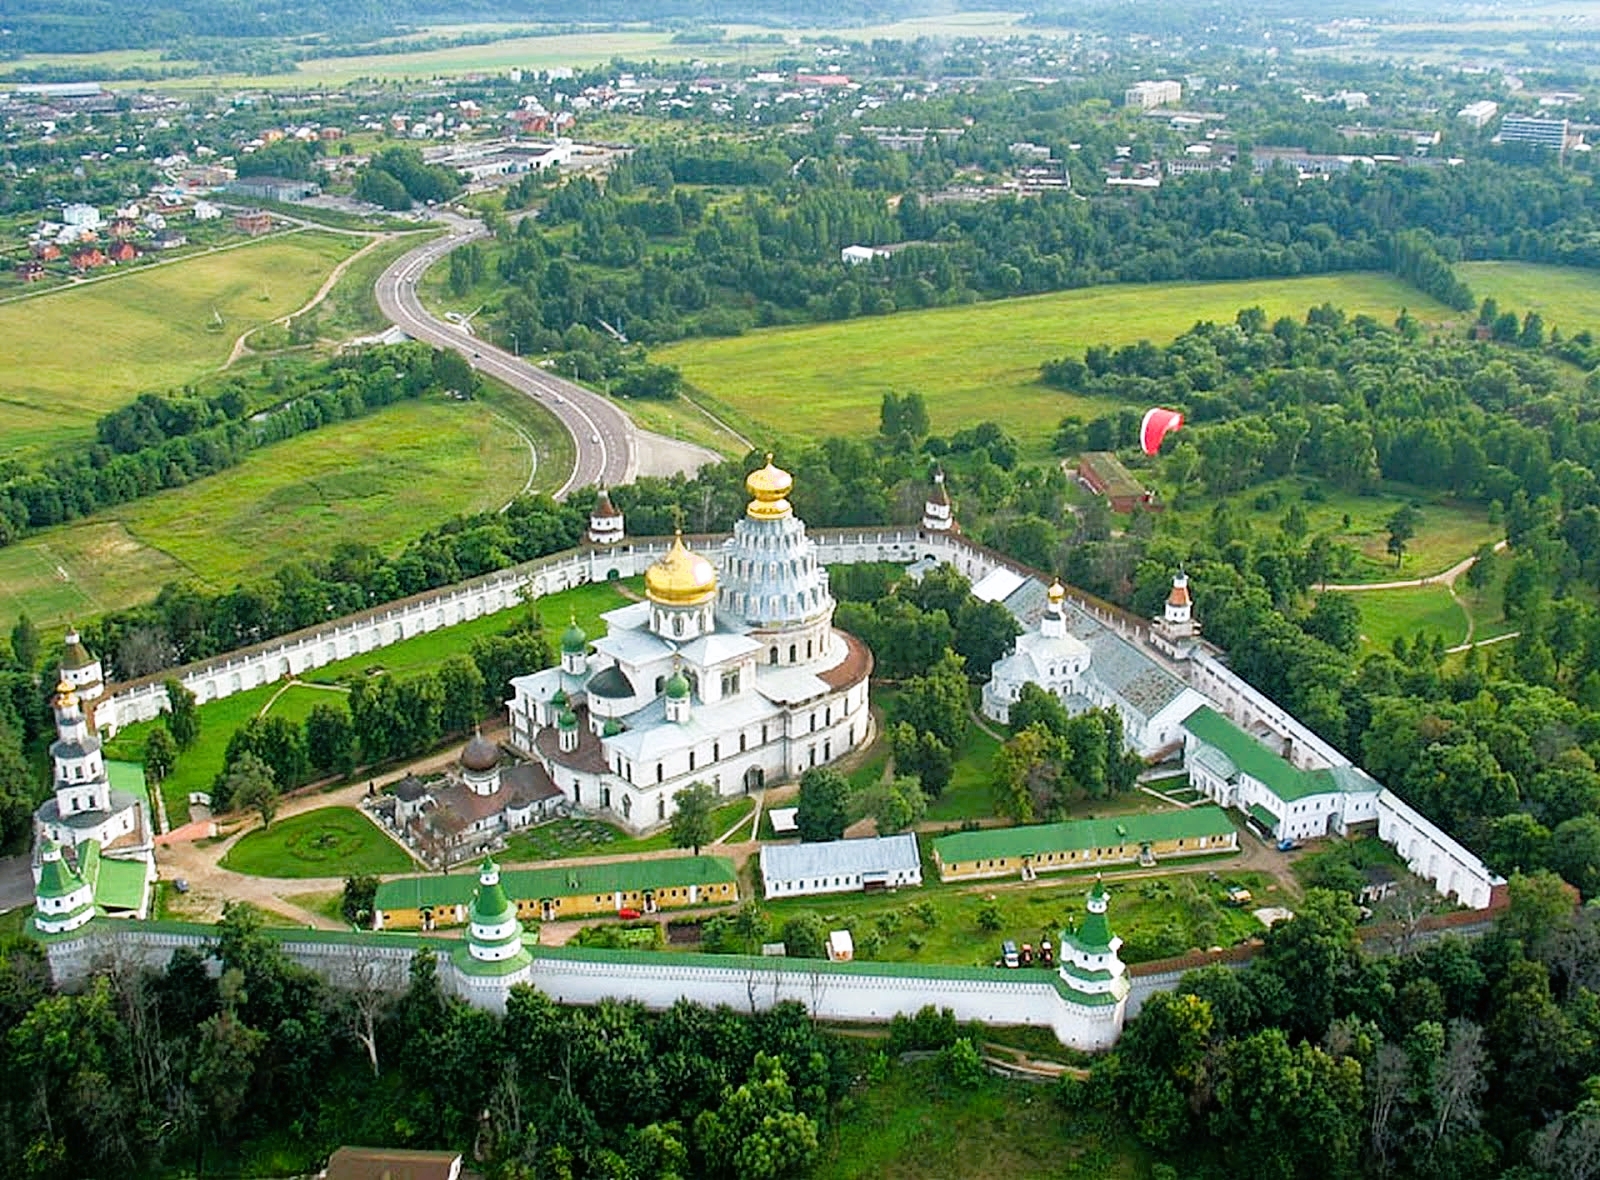 Новоиерусалимский монастырь (Подмосковье. Истра - Воскресенск)